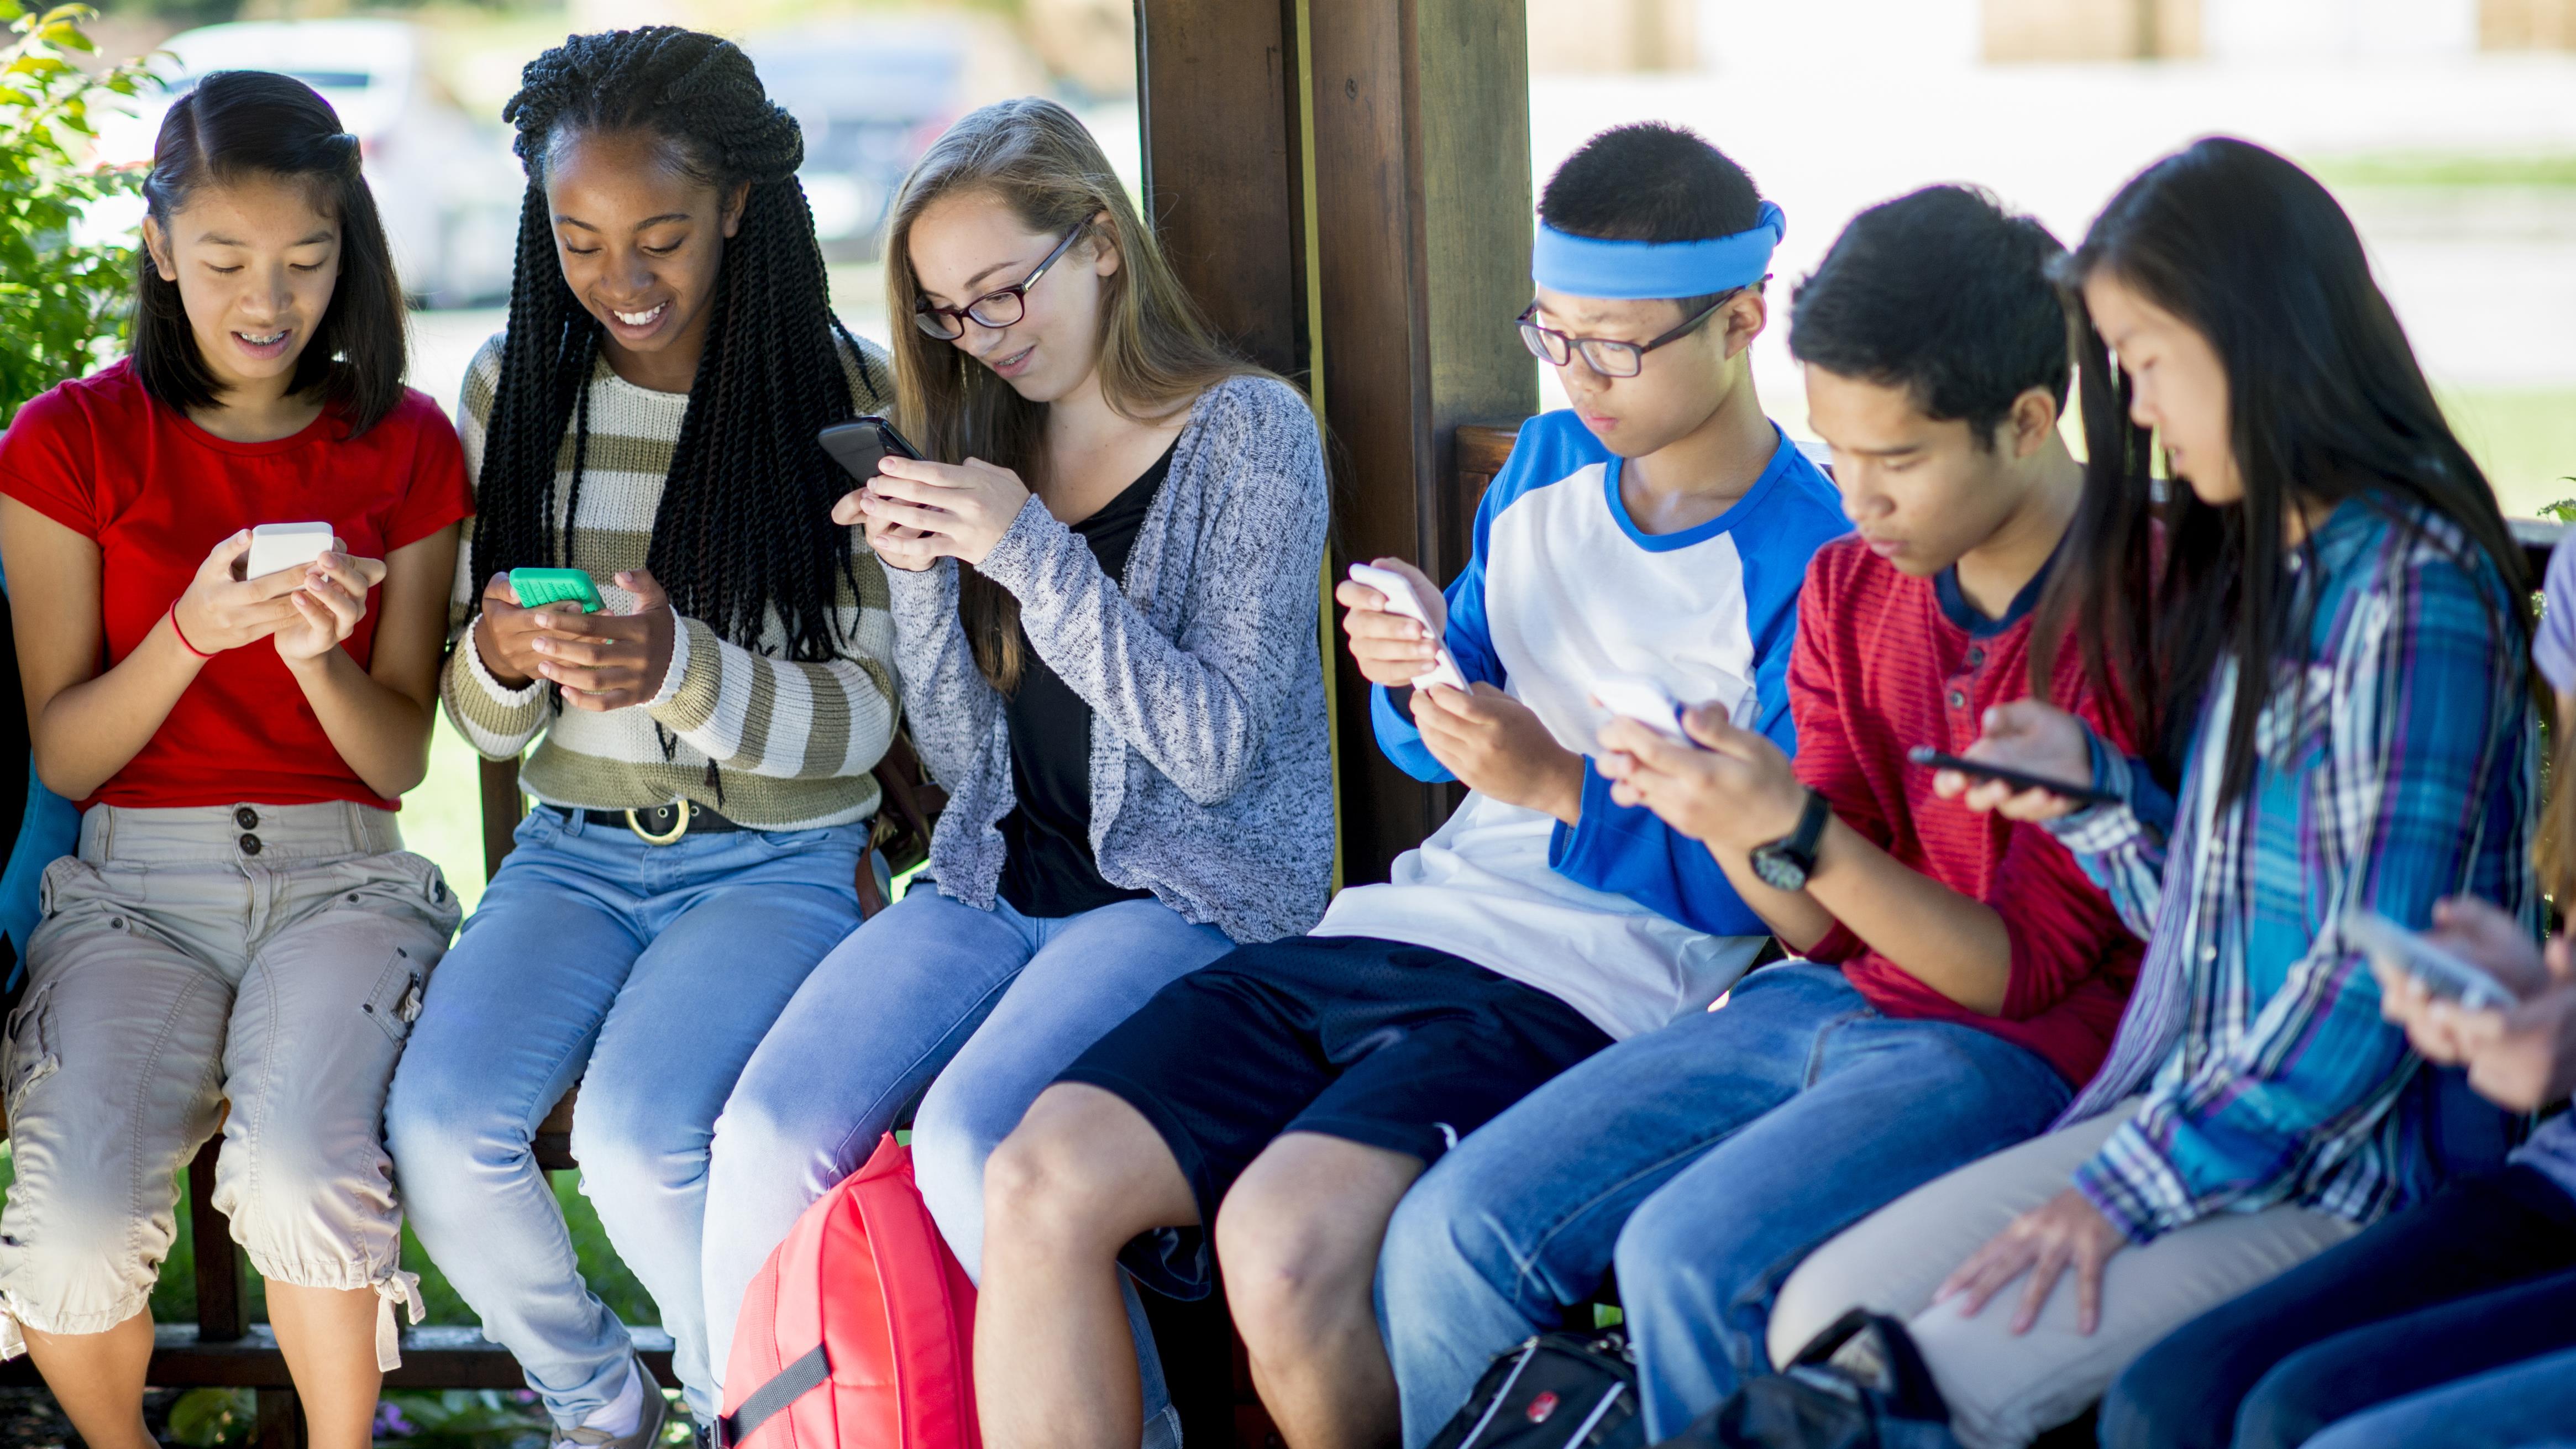 Сообщество молодежи. Молодежь с гаджетами. Современная молодежь. Молодежь в телефонах. Подросток с мобильником.